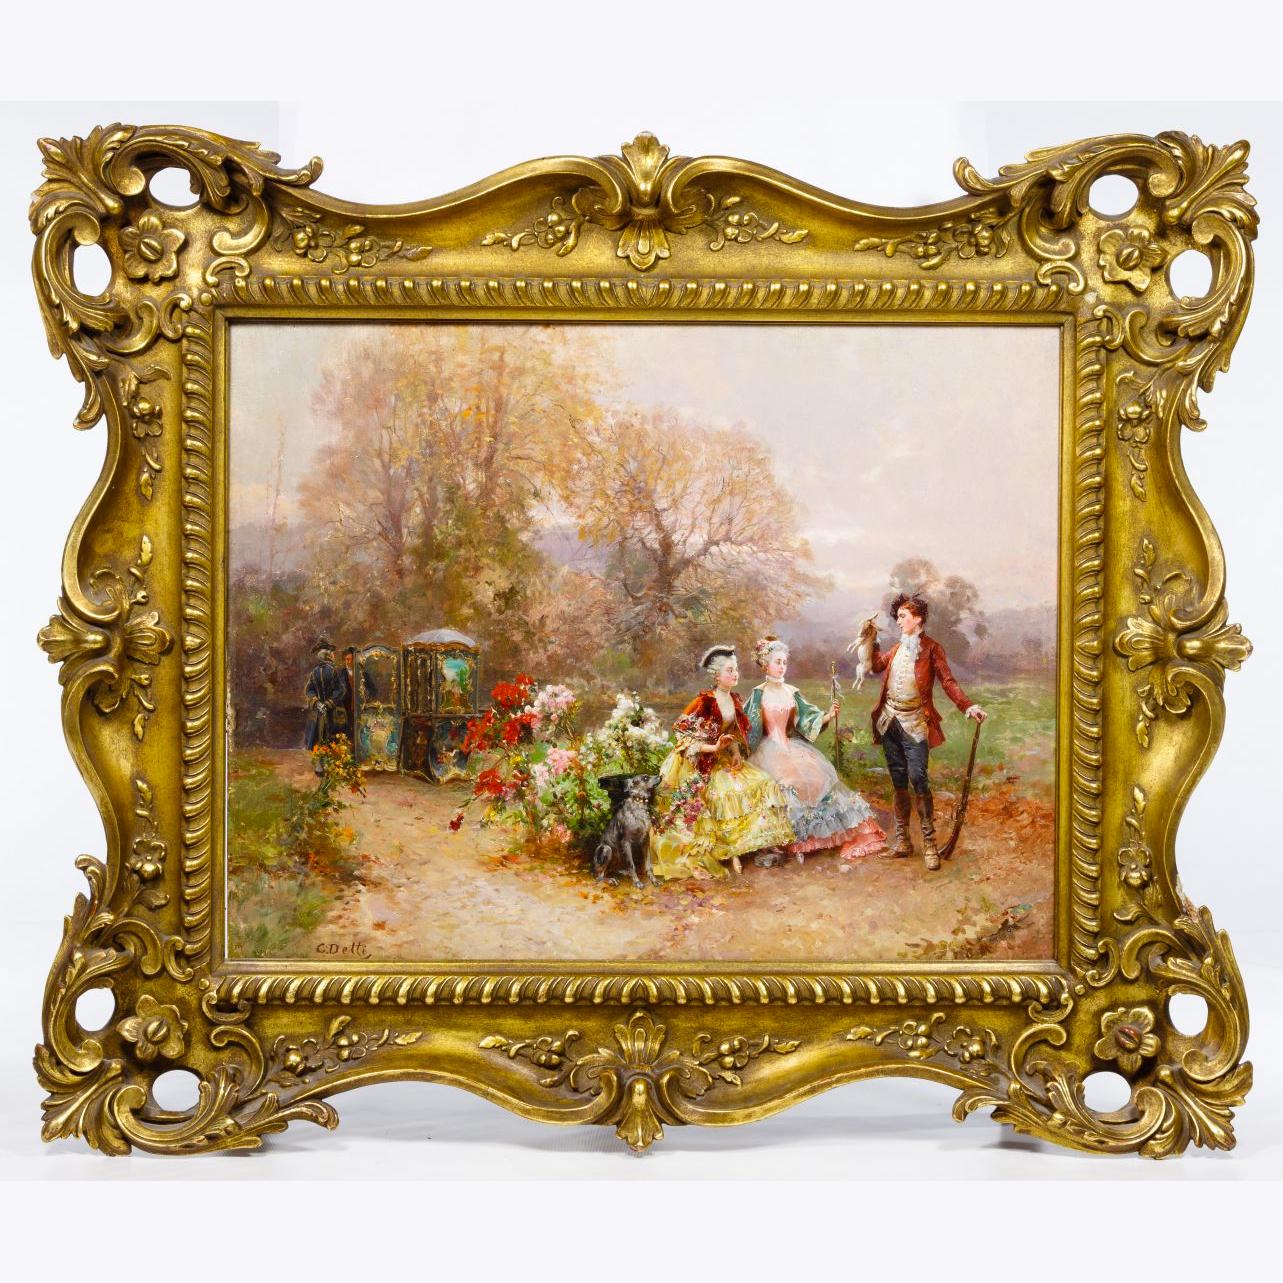 Portrait Painting Cesare Auguste Detti - Une peinture de Cesare Detti de qualité supérieure représentant un chasseur et deux femmes